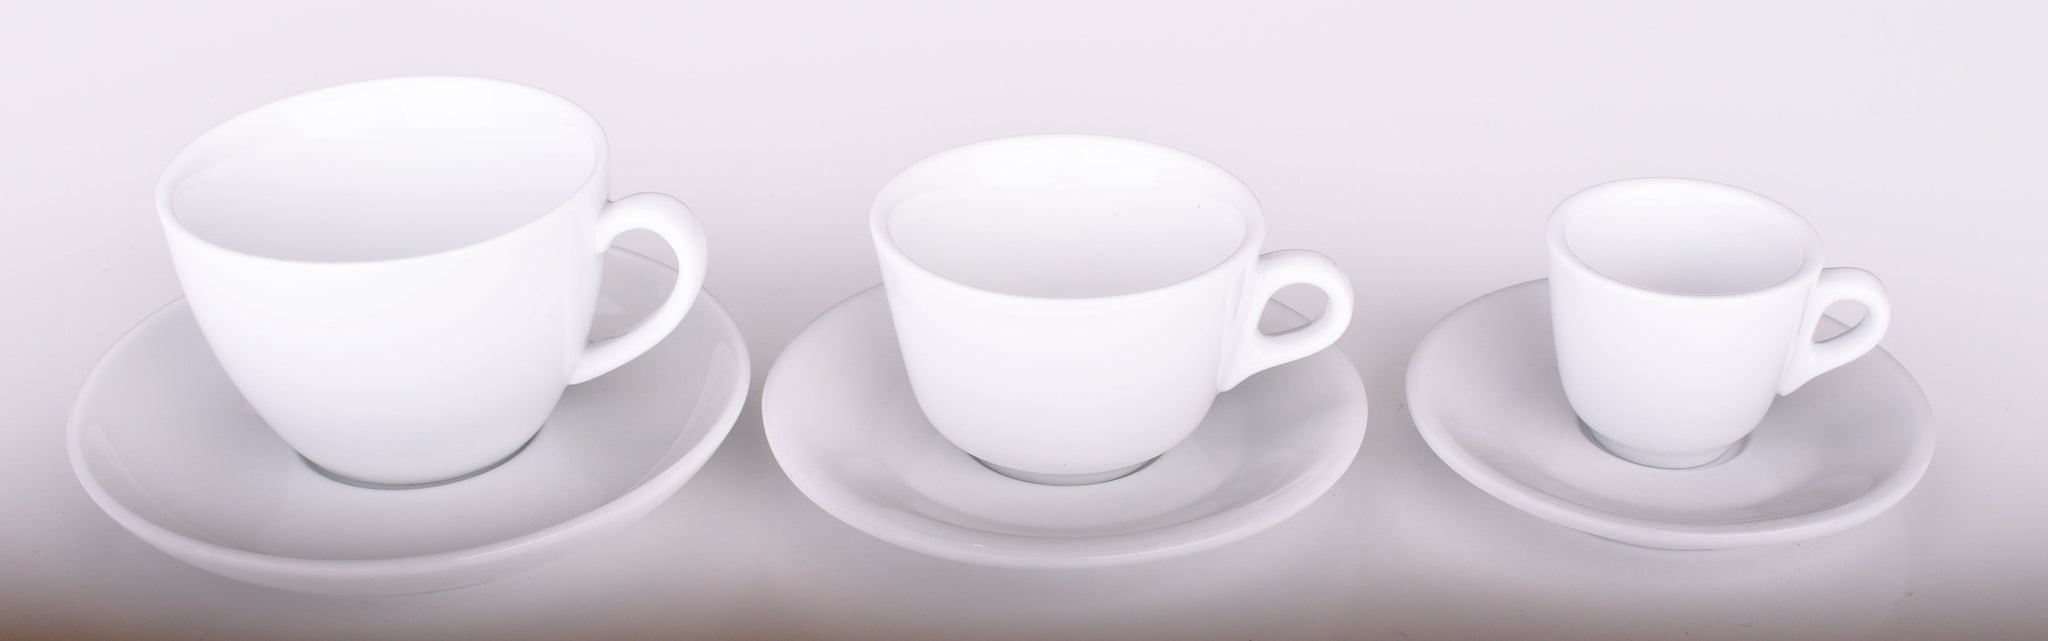 ESPRESSO PARTS Porcelain, Cappuccino Cups w/Saucers, Café Style (6oz)  (Black)